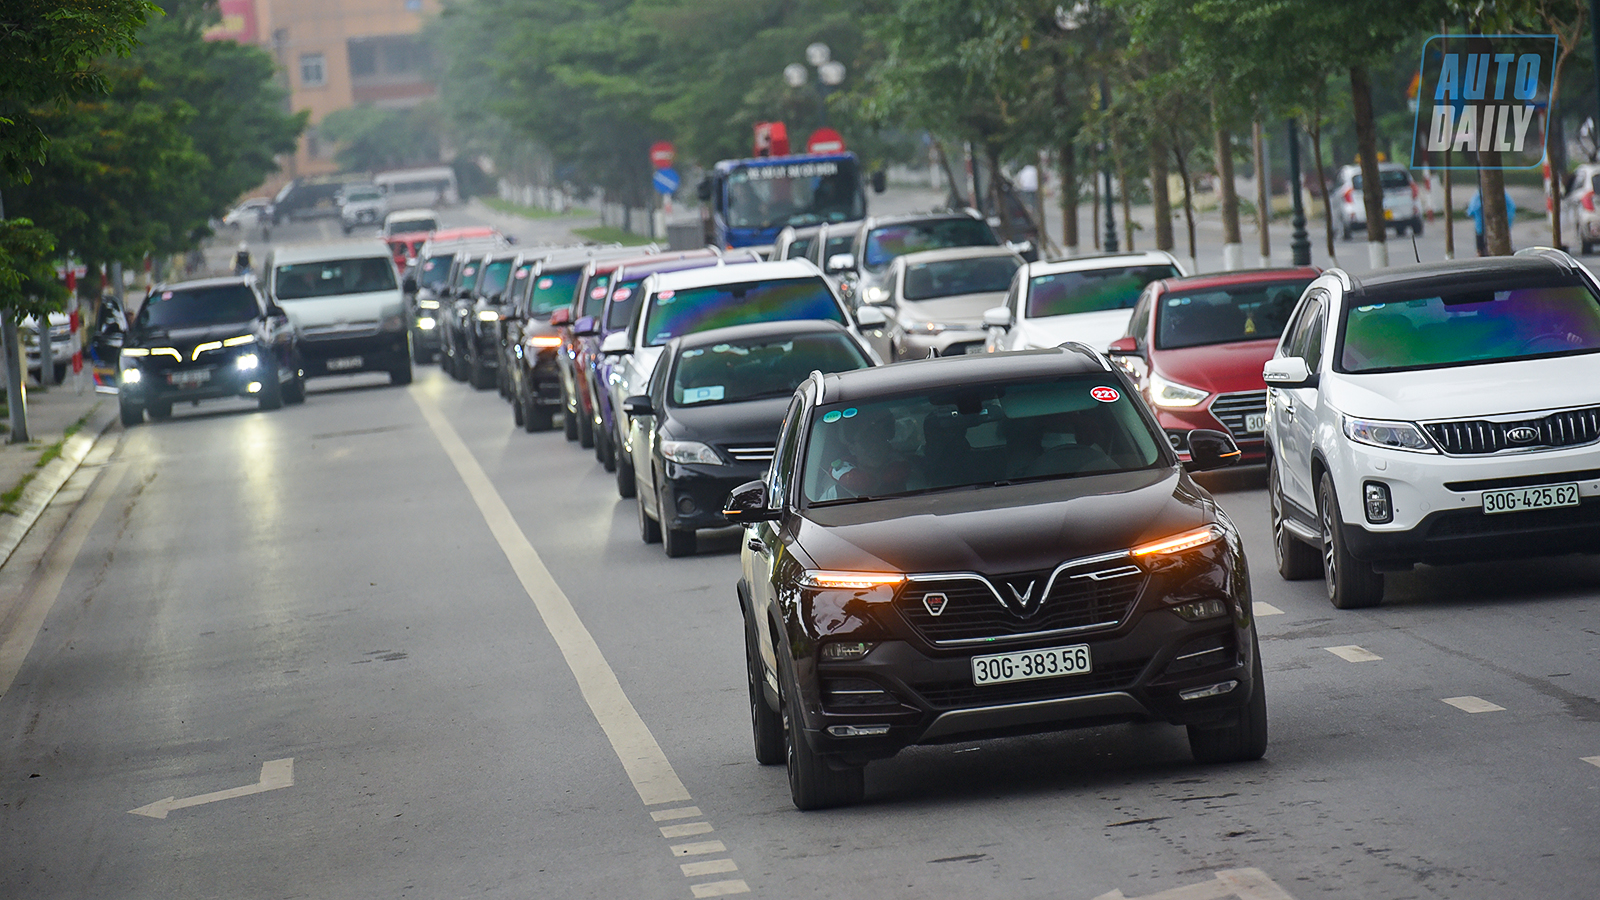 Chùm ảnh gần 60 xe VinFast Lux tại Hà Nội xuất phát Offline 3 miền tại Hội An dsc-6440-copy.jpg